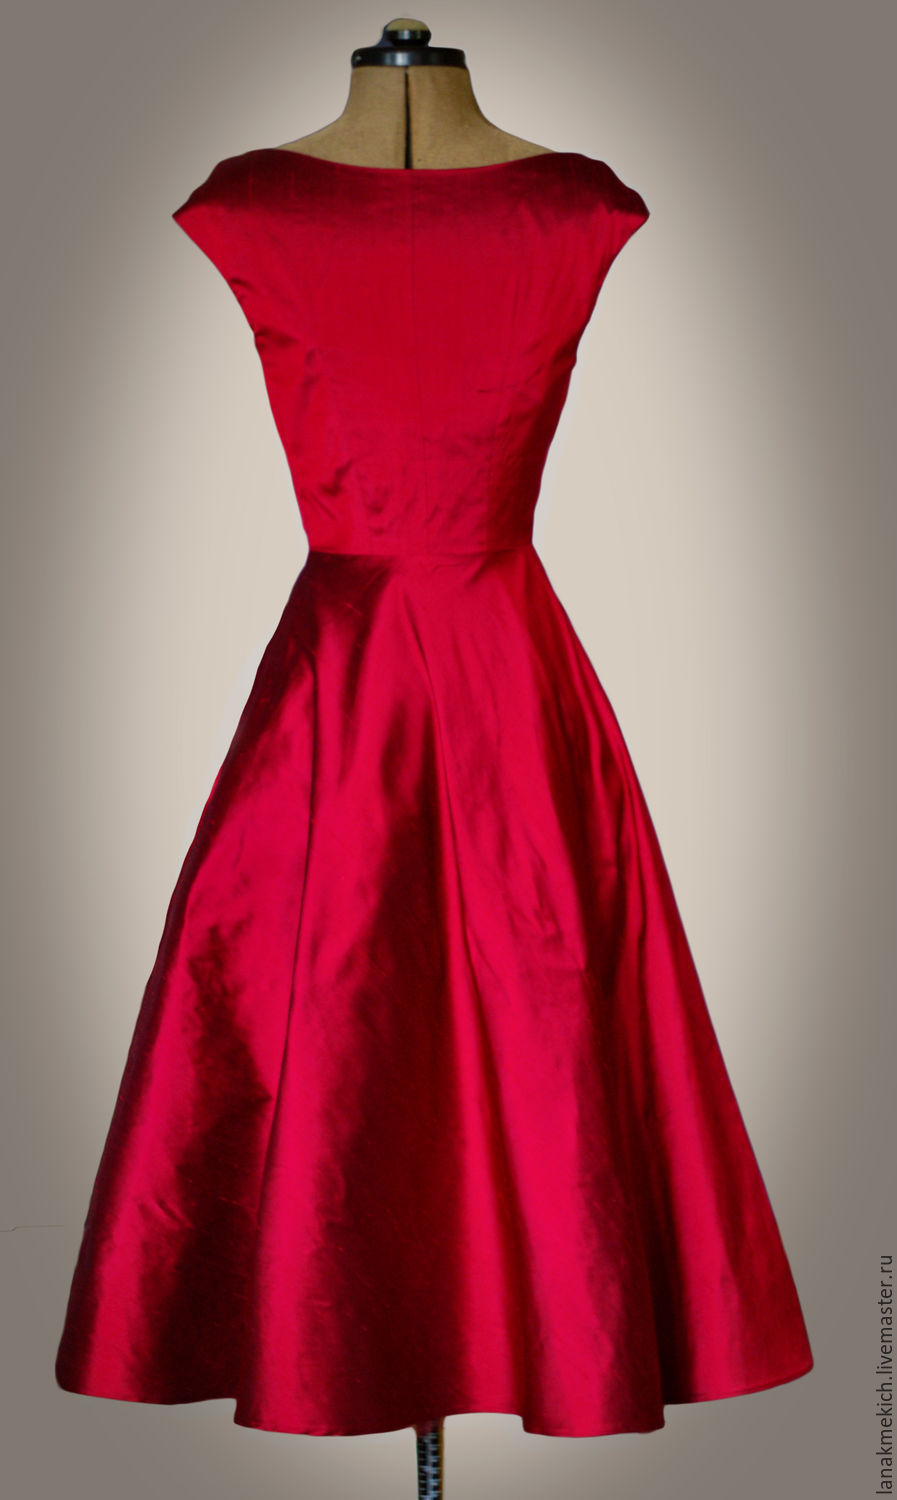 Платье из красной тафты